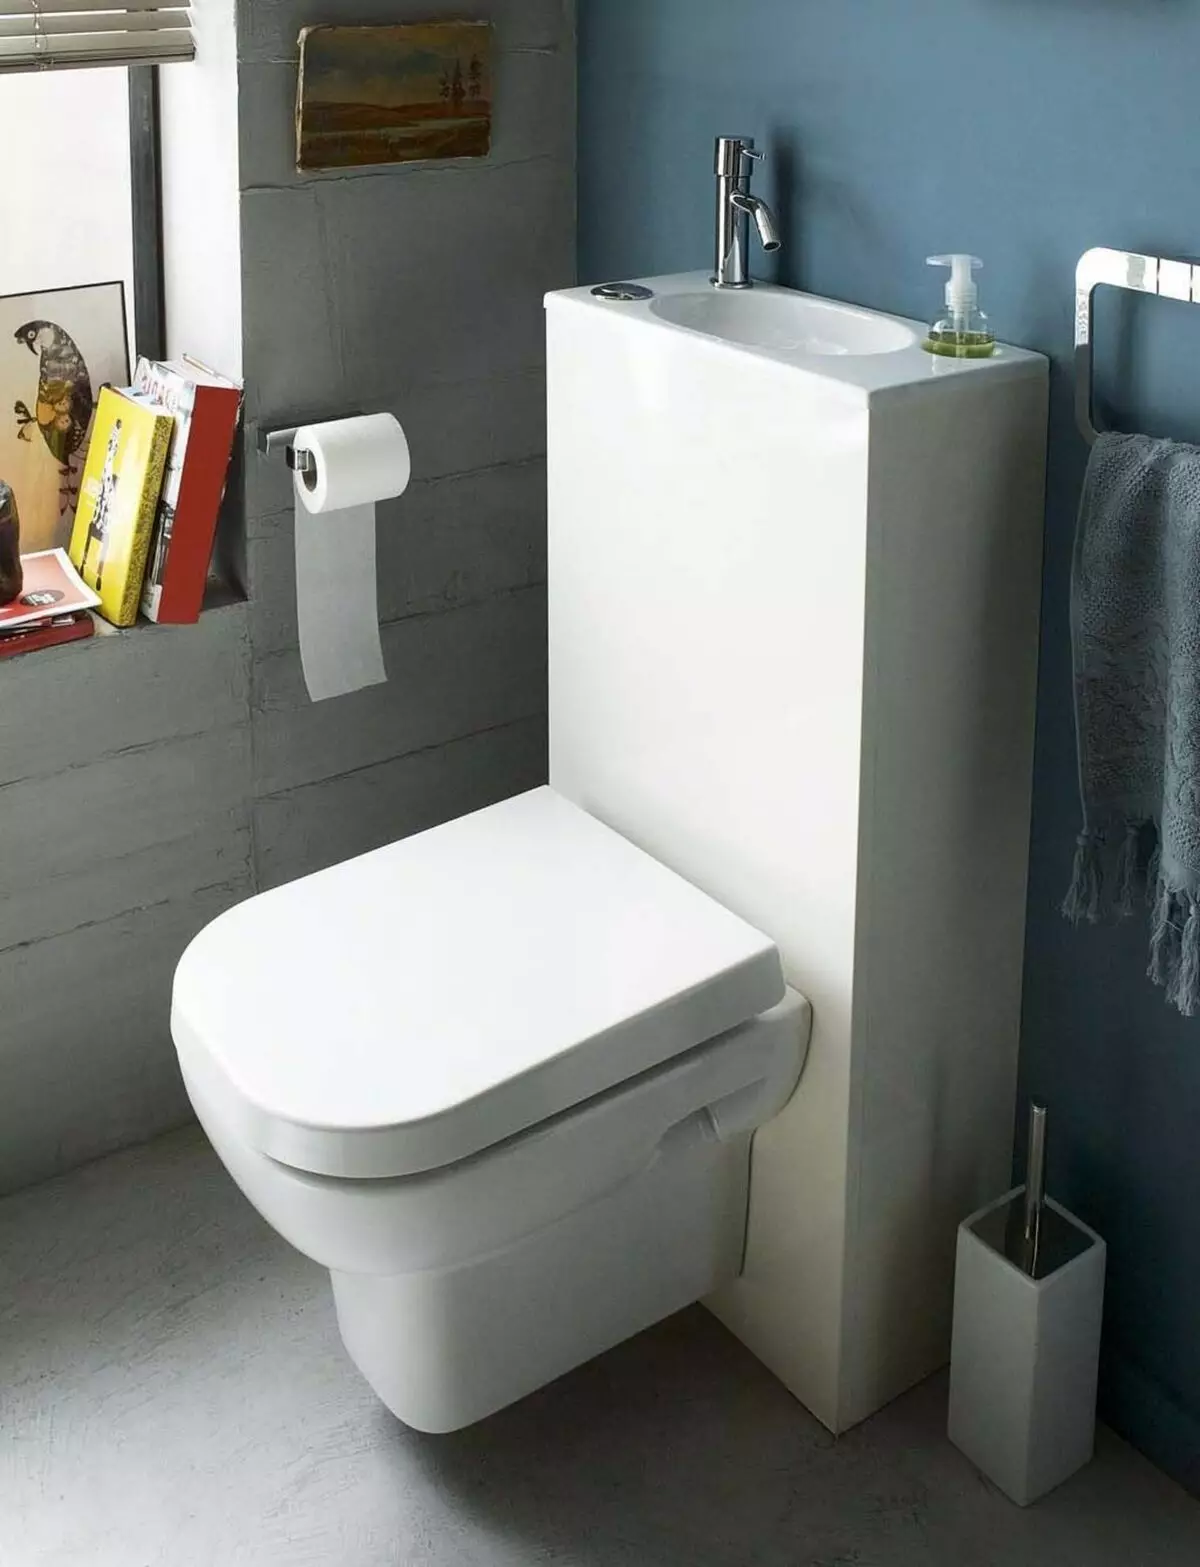 Тоалетни чинии на резервоар: дизайна на комбинирани тоалетната чиния с мивка. Задайте 2 в 1 с вградени мивки и tumb, други модели на комбота 10526_21